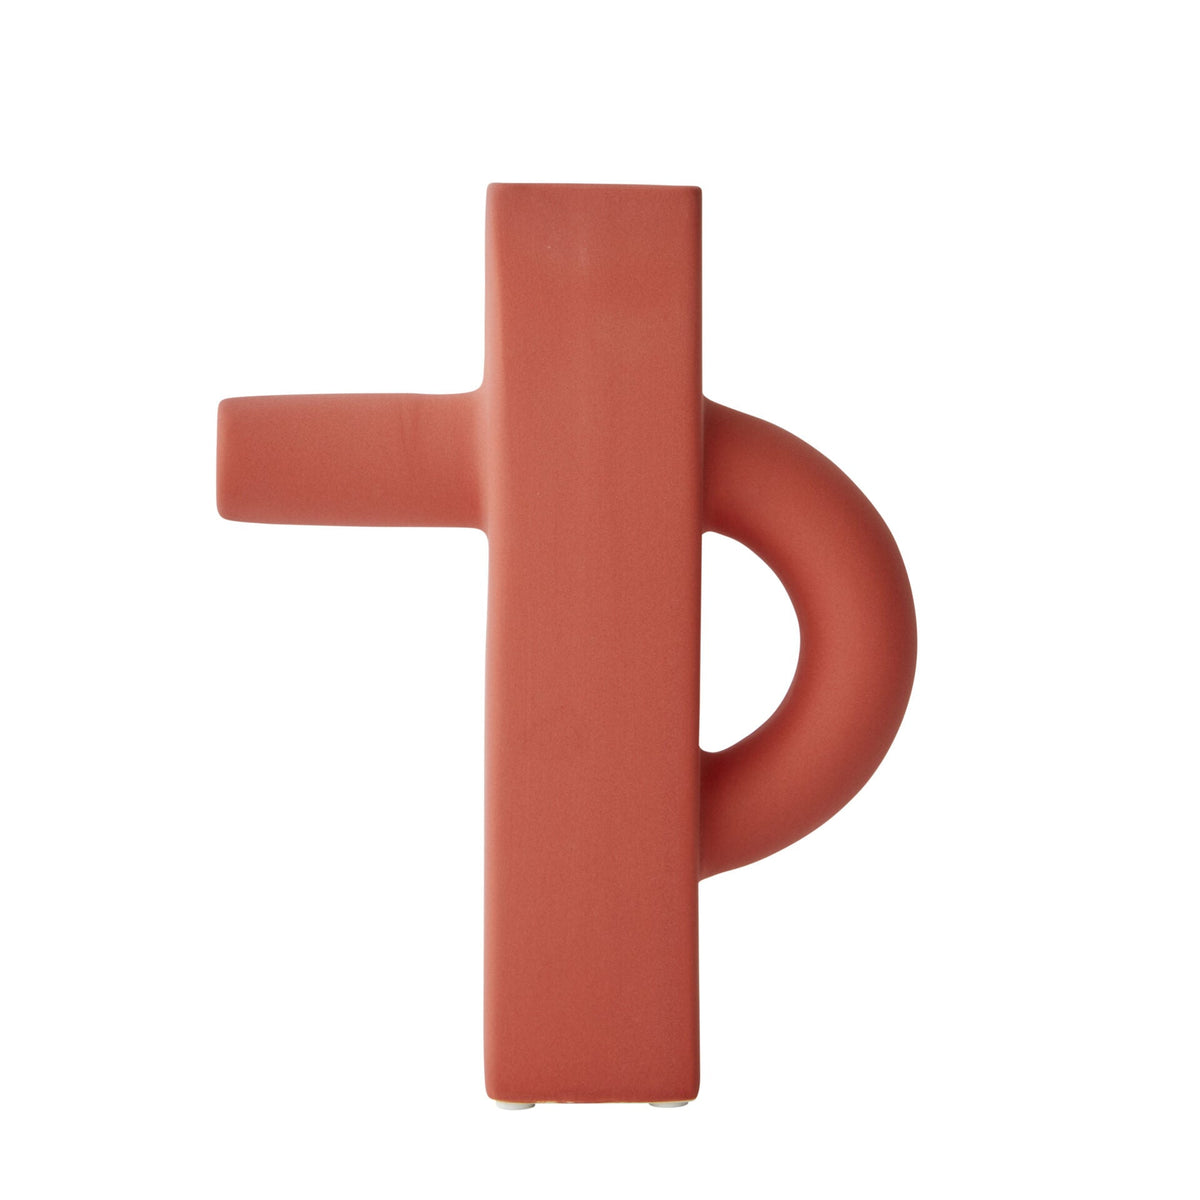 Curio Ceramic Vase in Red - 23.5cm